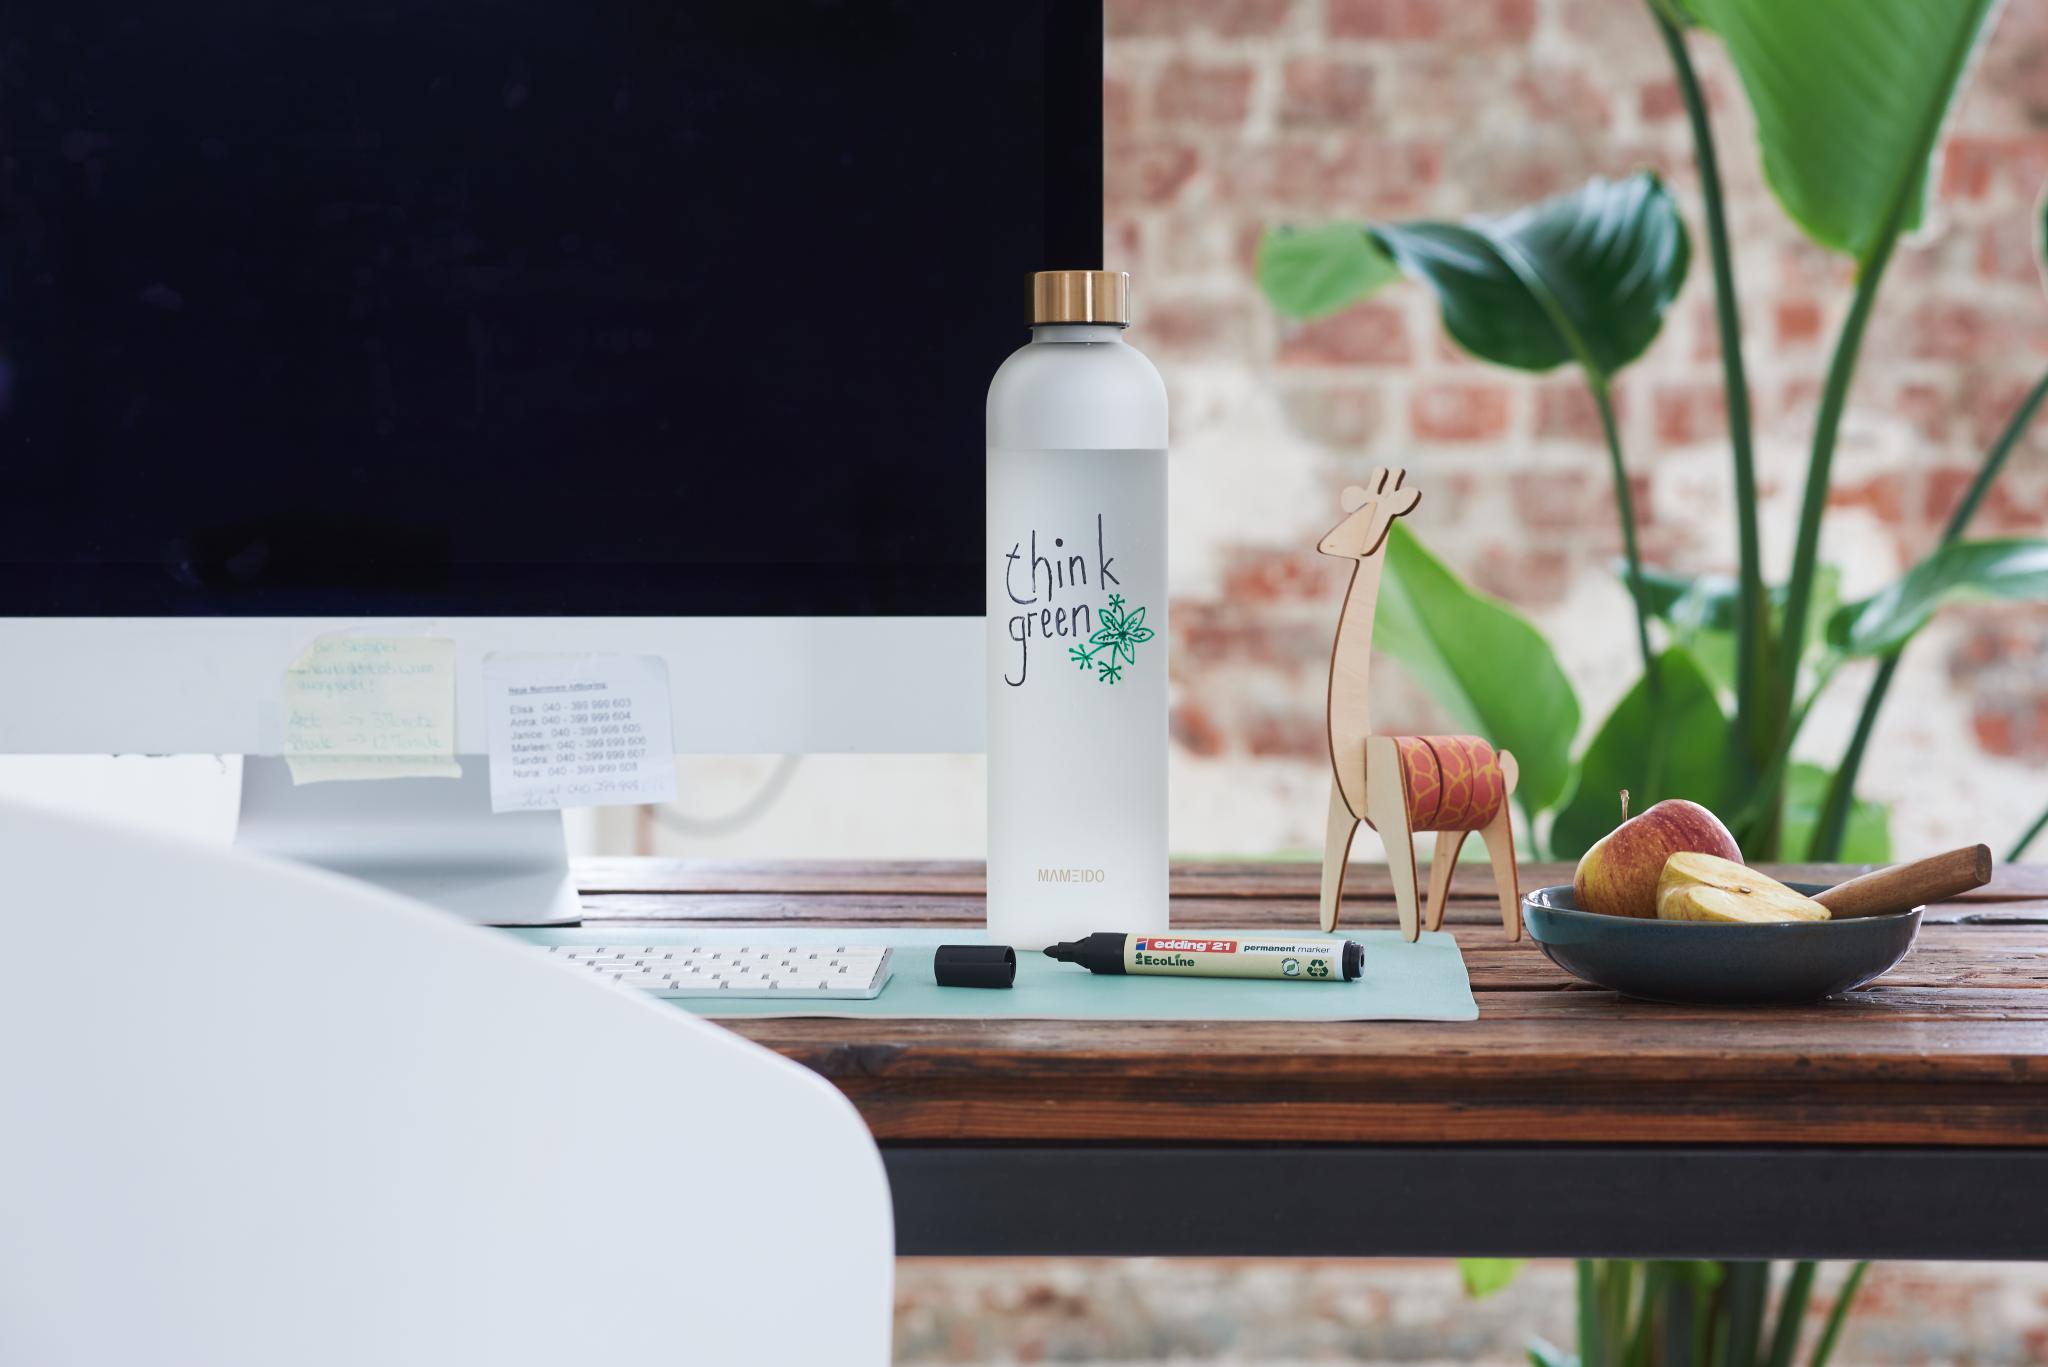 Ein moderner Arbeitsbereich mit einem eleganten Computermonitor auf einem Holzschreibtisch, ausgestattet mit einer edding „Think Green“-Wasserflasche, einer dekorativen Giraffenfigur aus Holz und einer Schale mit frischem Obst daneben.